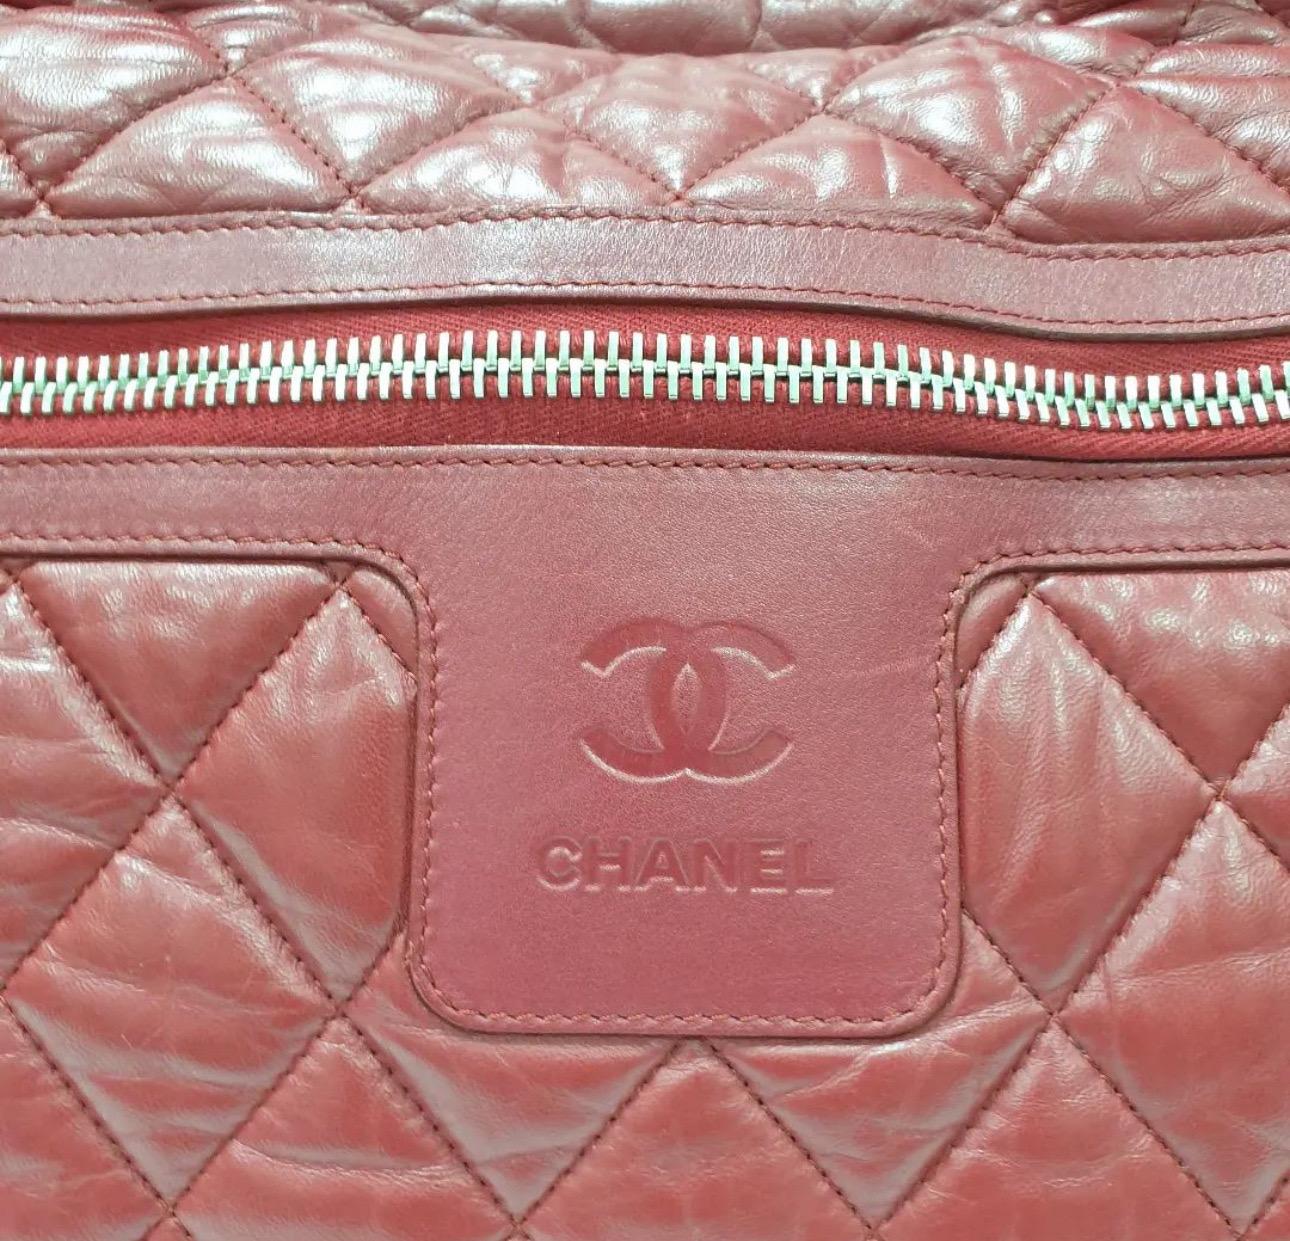 Auth Chanel Matelasse Boston Bag Women's Leather Bordeaux

Brand: Chanel

Gender: Women

Line: Matelasse

Model: Boston bag

Color: Bordeaux

Hardware color: Silver

Material: Leather

Size (HxWxD): 27cm x 40cm x 16cm / 10.62'' x 15.74'' x